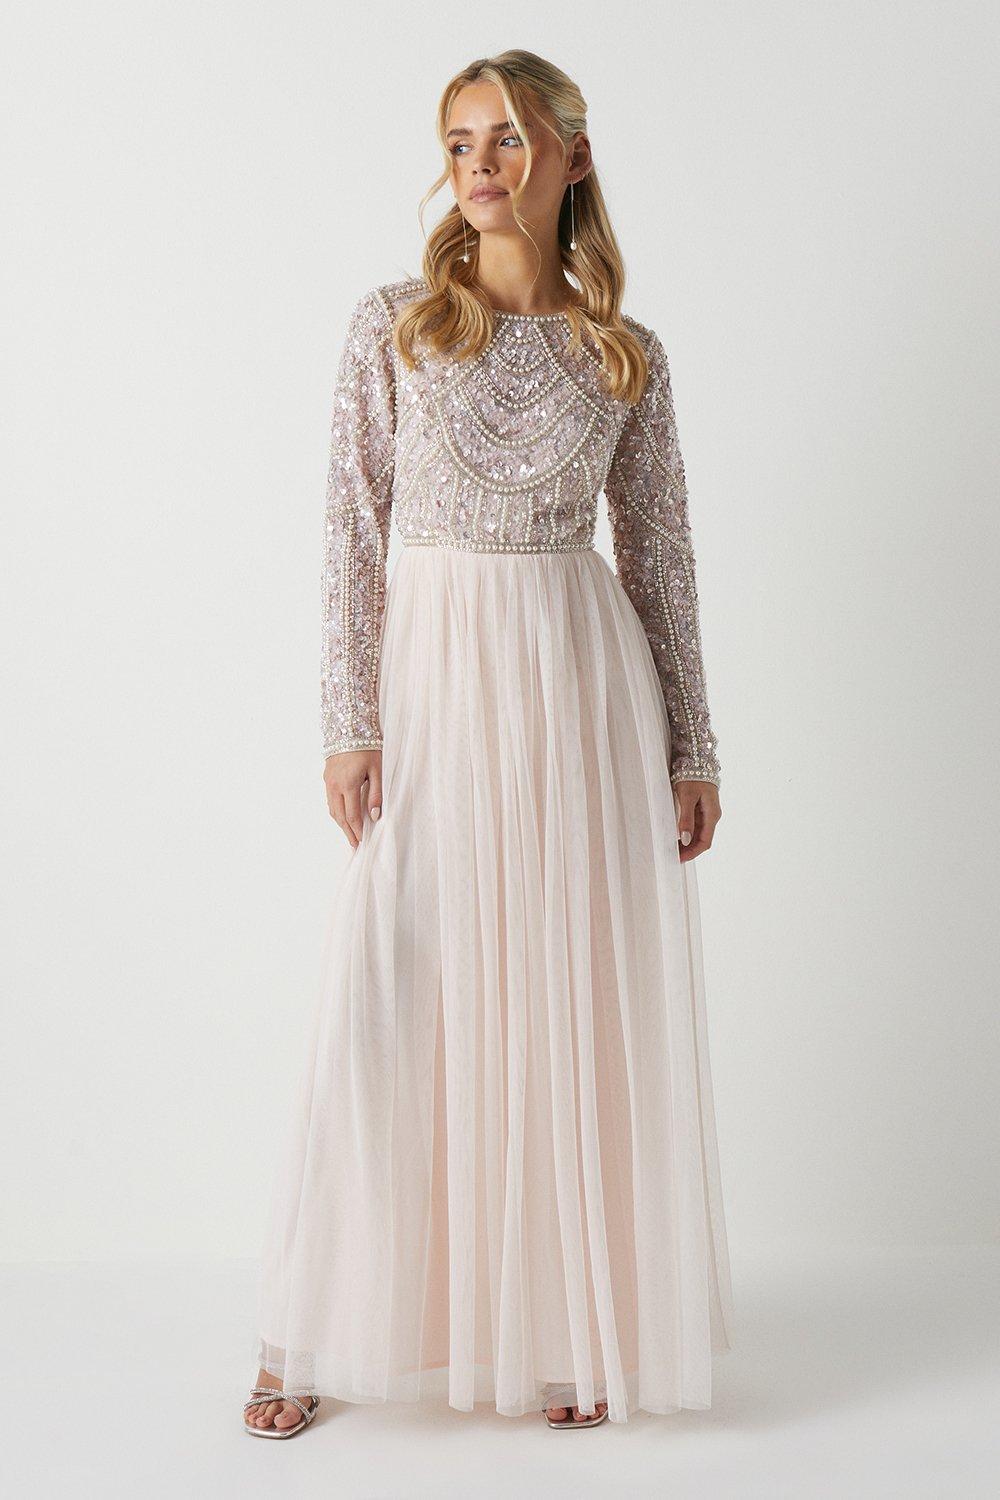 Миниатюрное платье-юбка из тюля с лифом и лифом подружки невесты, украшенным жемчугом Coast, розовый